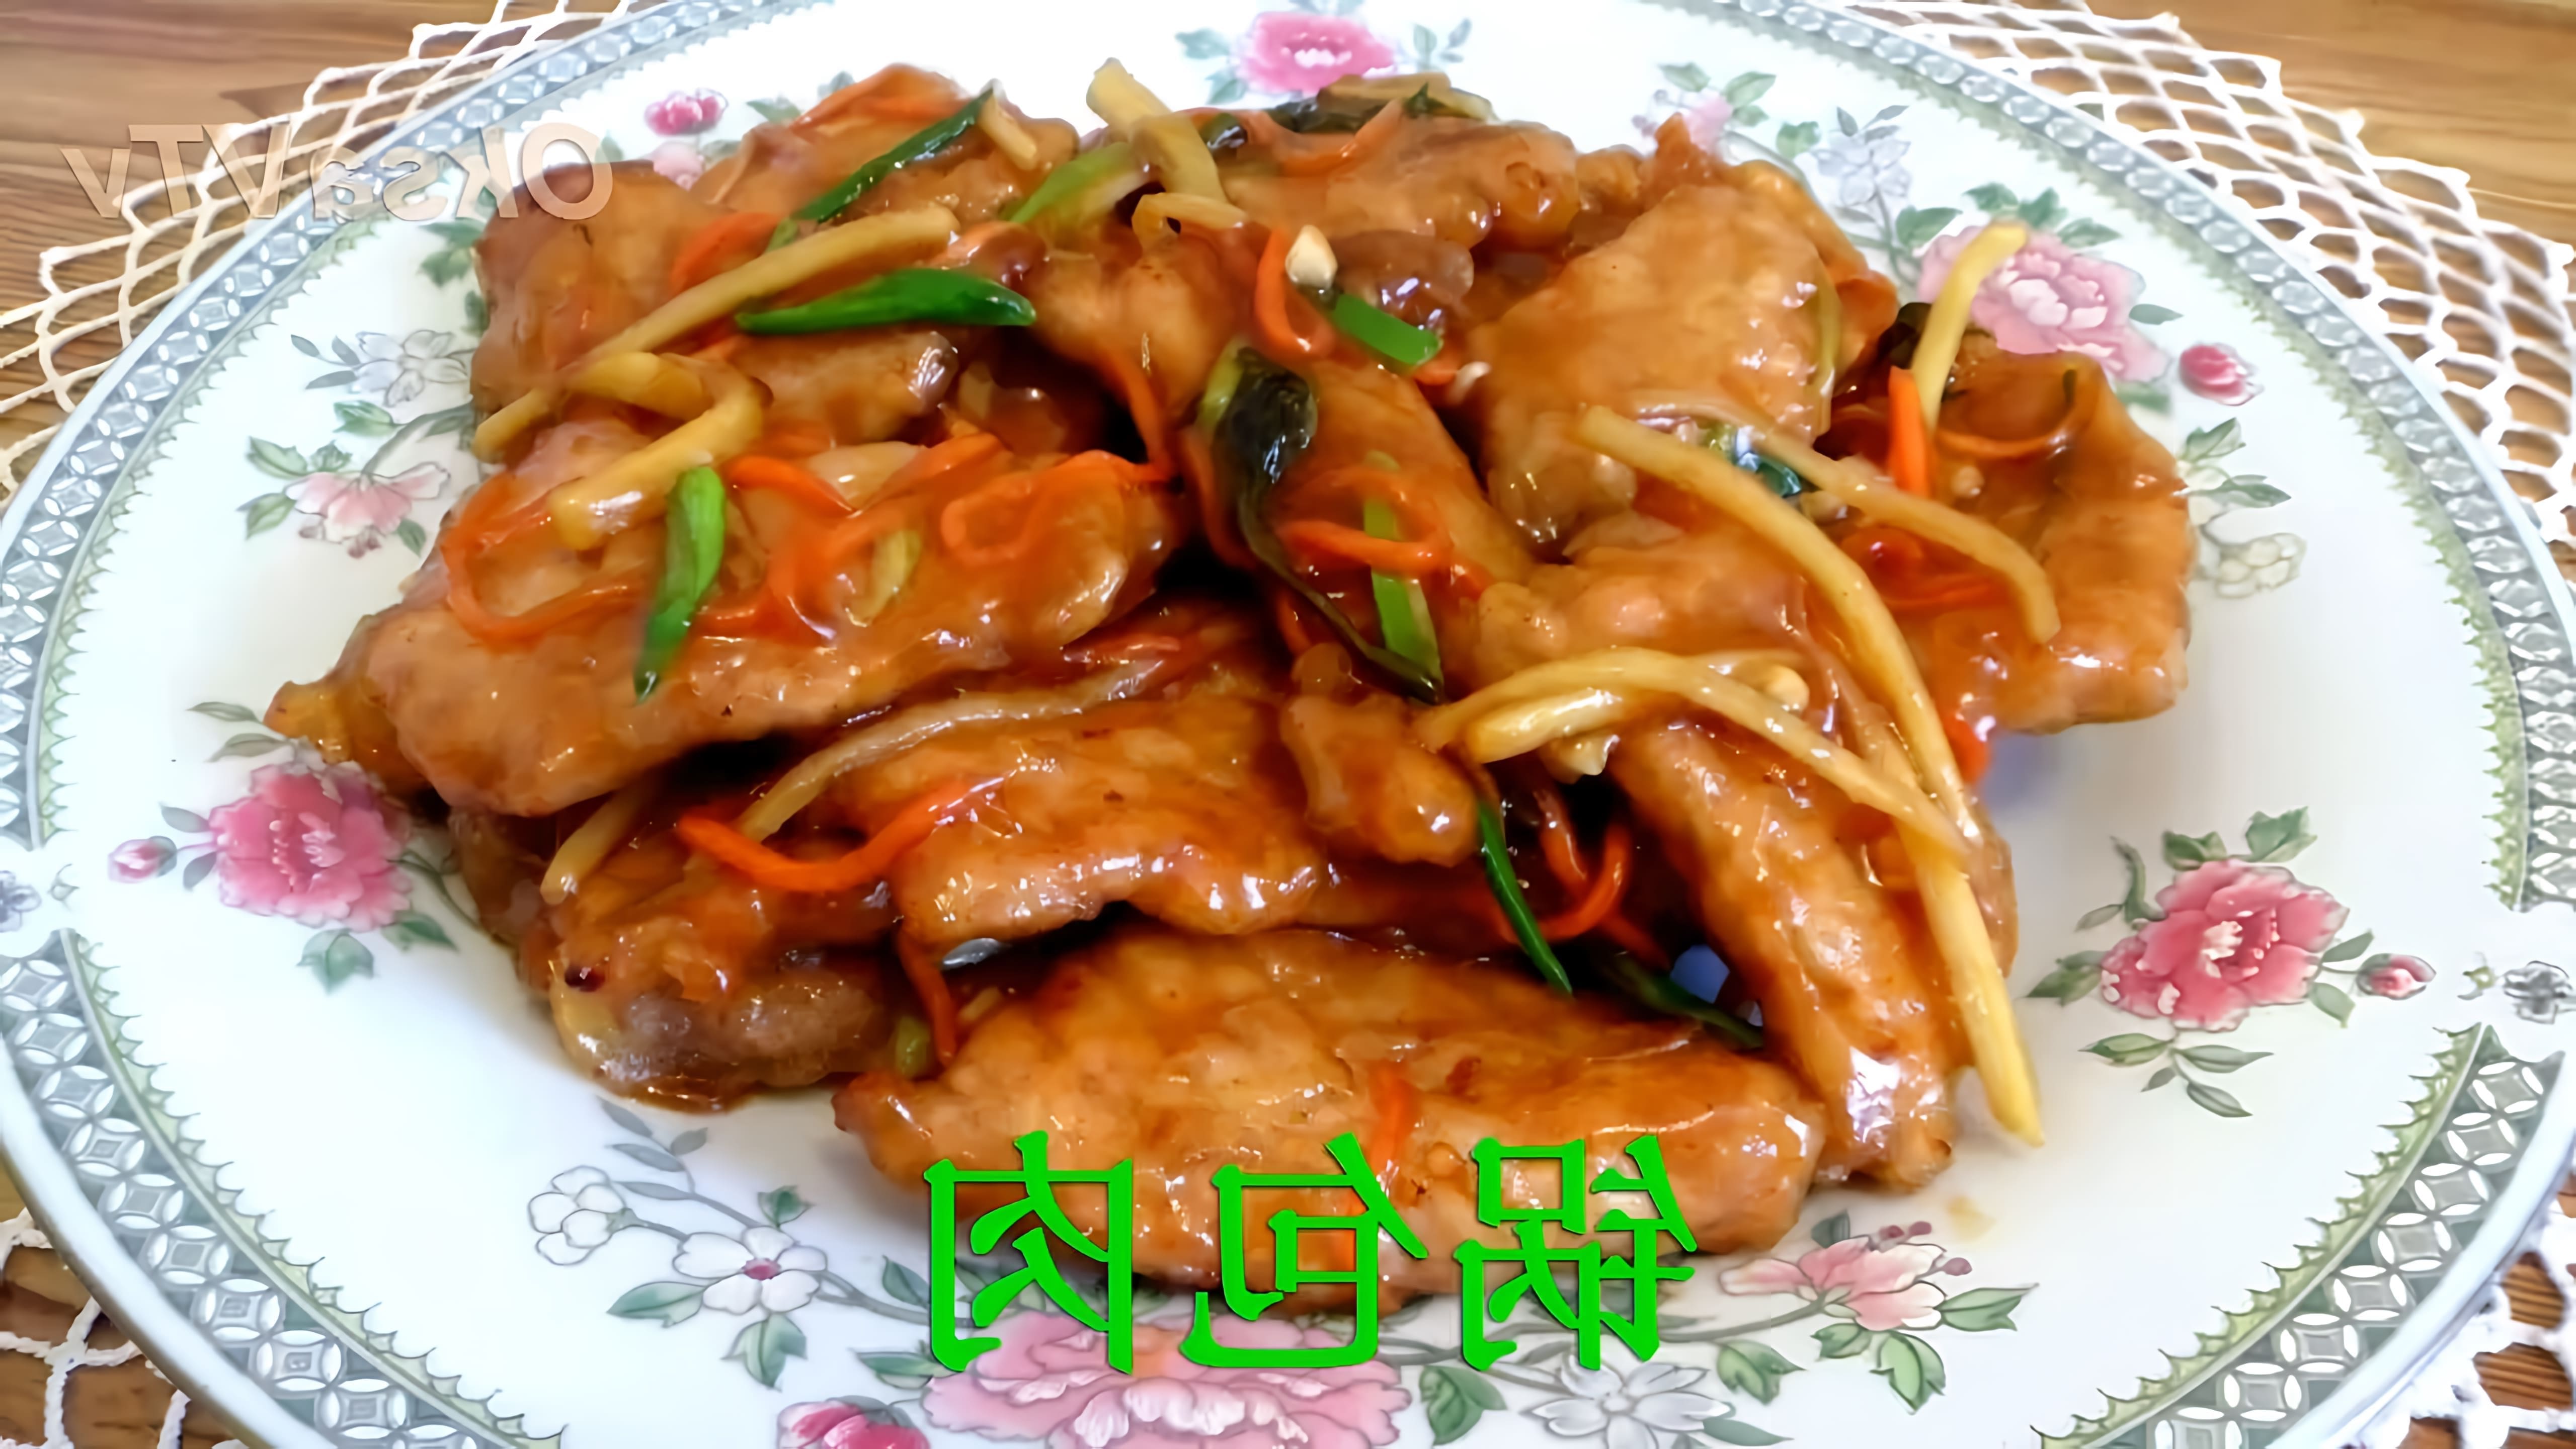 В этом видео демонстрируется процесс приготовления свинины в кисло-сладком соусе по-китайски, также известного как габо ушел